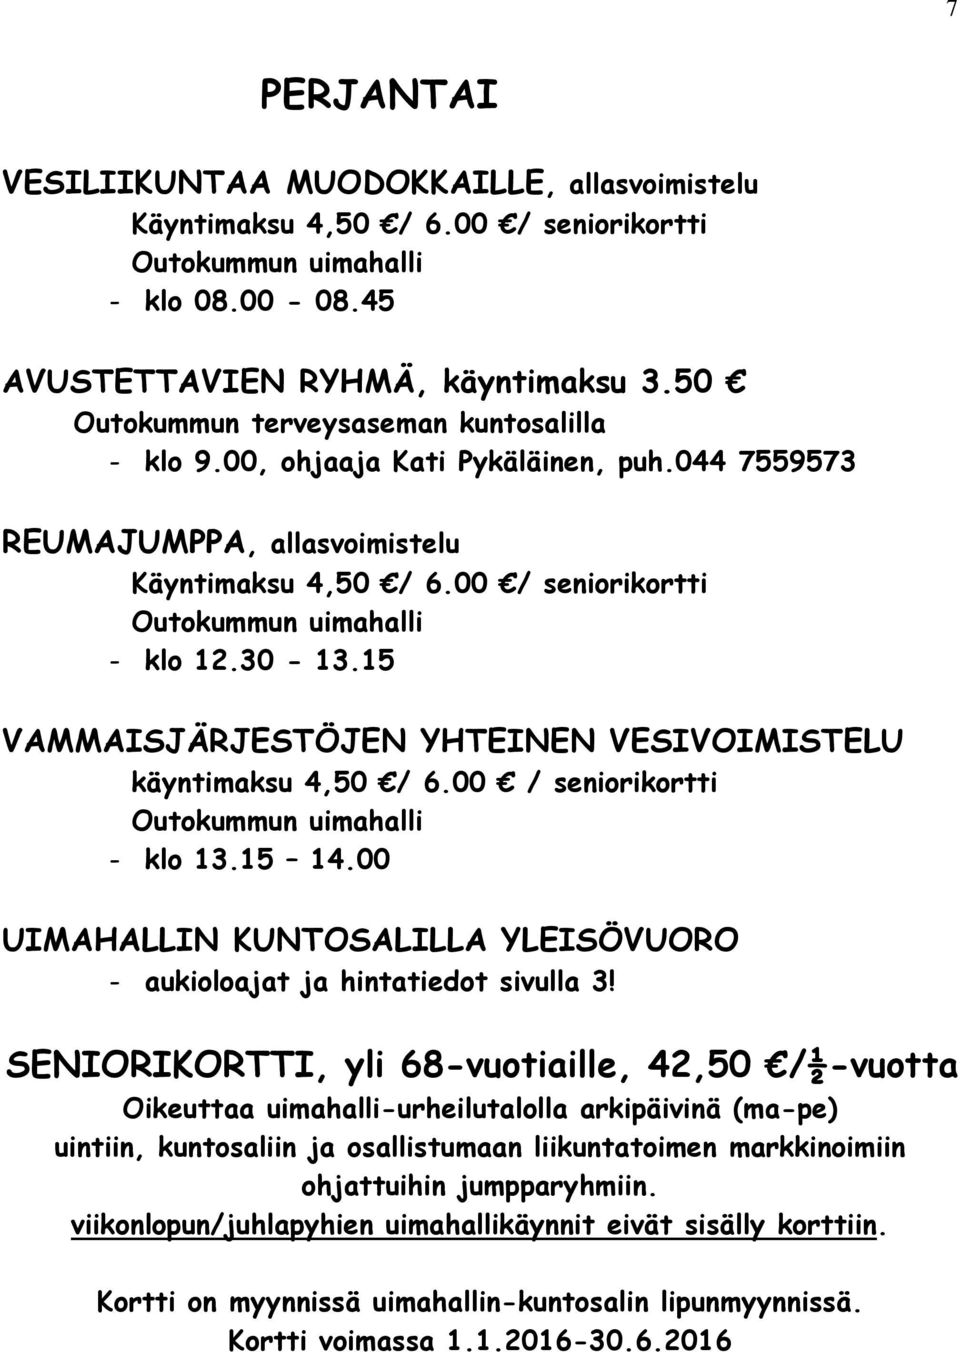 15 VAMMAISJÄRJESTÖJEN YHTEINEN VESIVOIMISTELU käyntimaksu 4,50 / 6.00 / seniorikortti - klo 13.15 14.